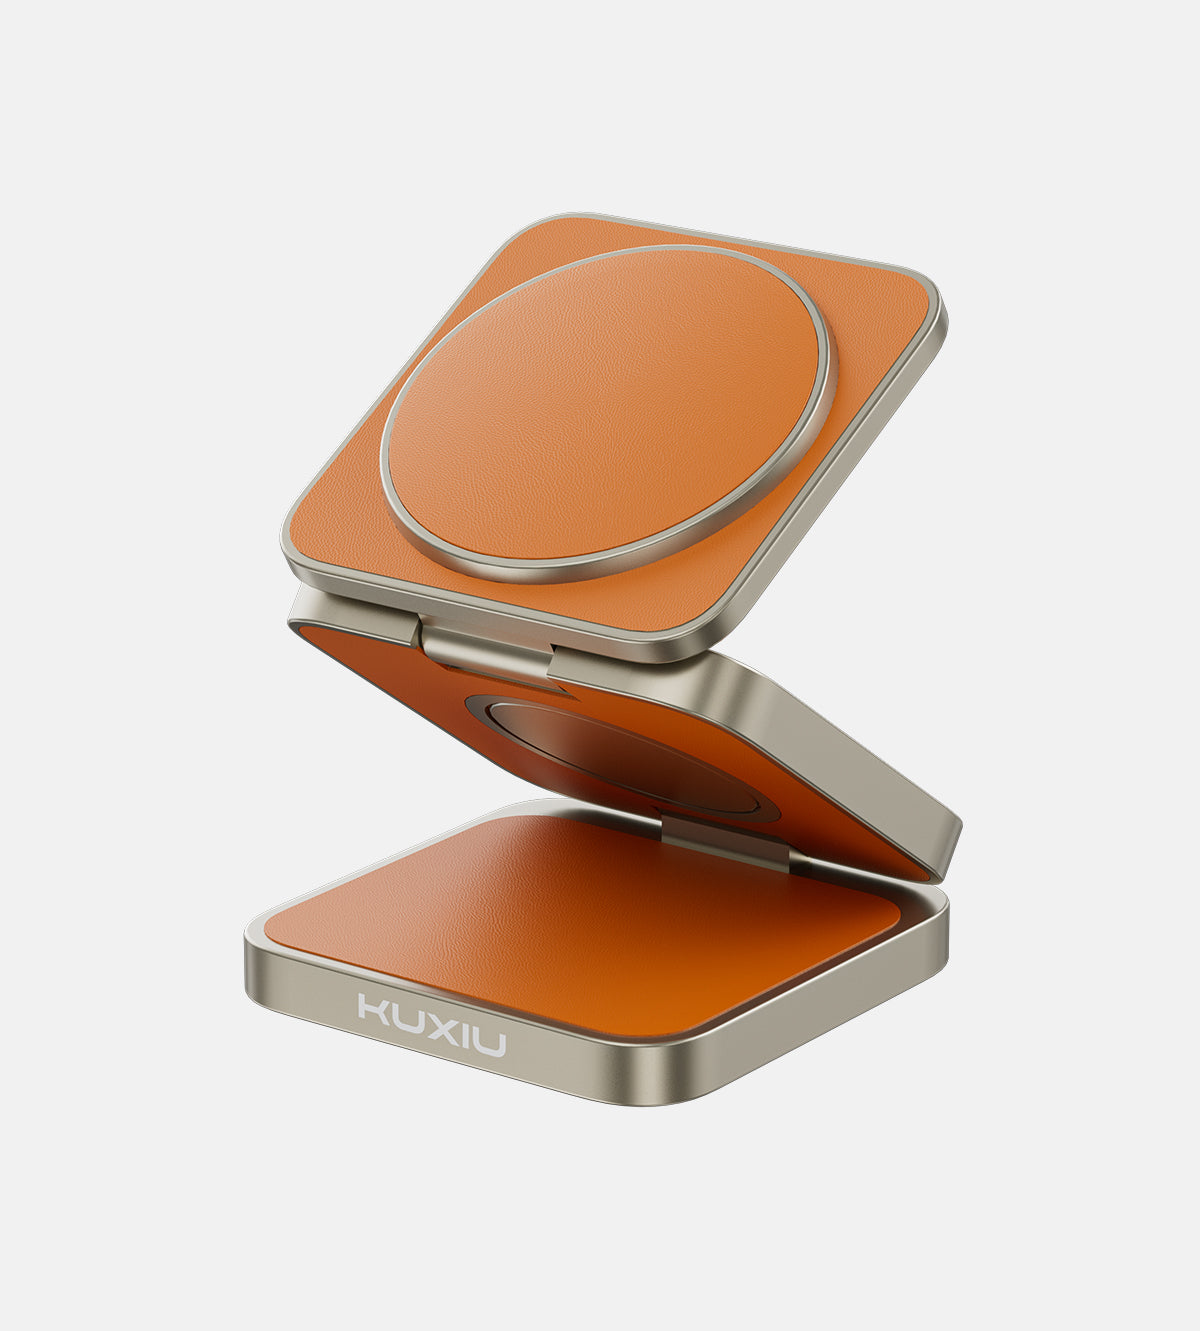 KUXIU X40 Pro 三合一可折疊磁性無線充電器和支架套件 - 橙色皮革